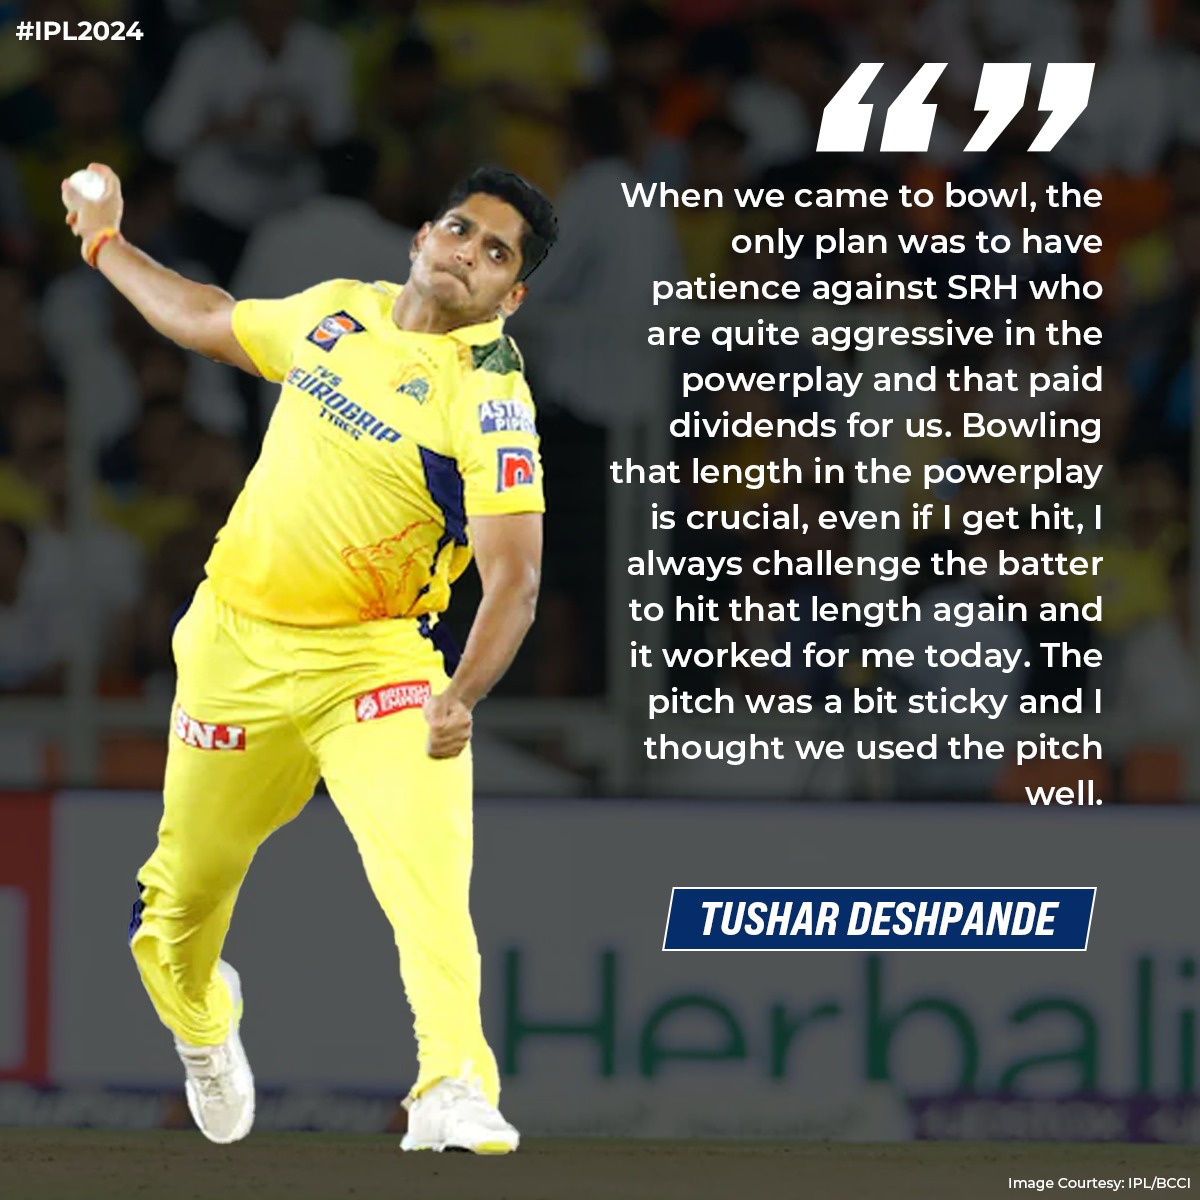 Tushar Deshpande explains his ploy to dismiss the SRH batters. #CSKvSRH #IPL #IPL2024